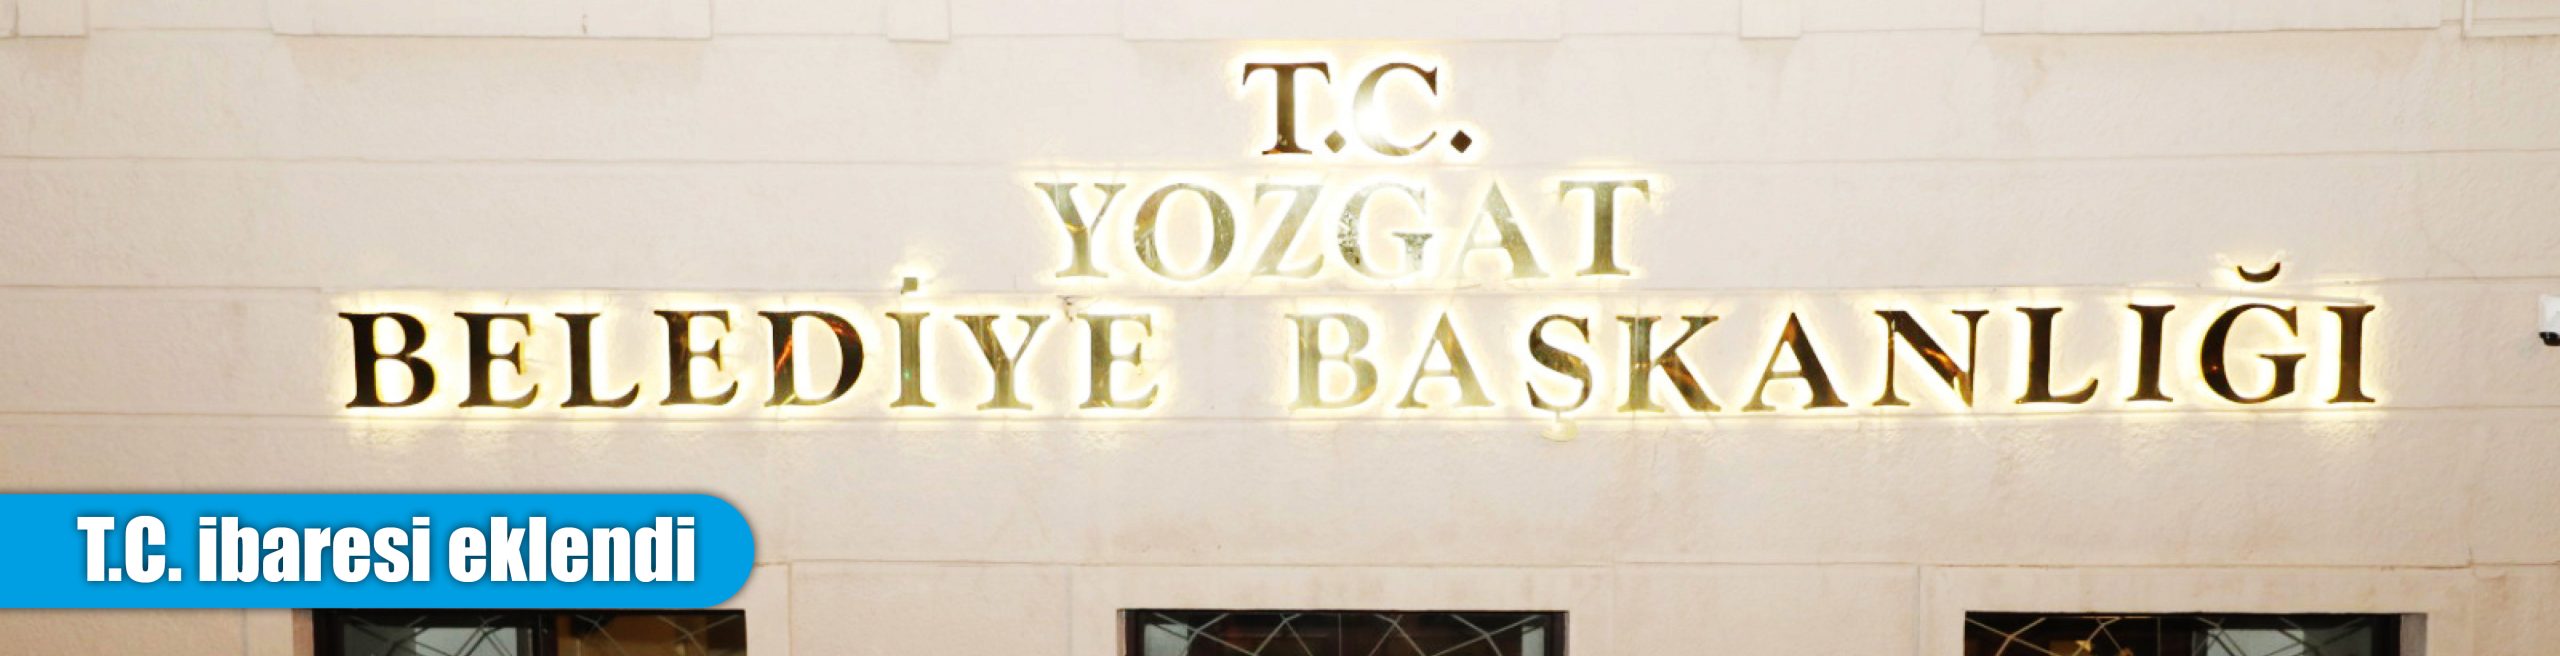 Yozgat Belediyesi’nin tabelasına T.C. ibaresi eklendi